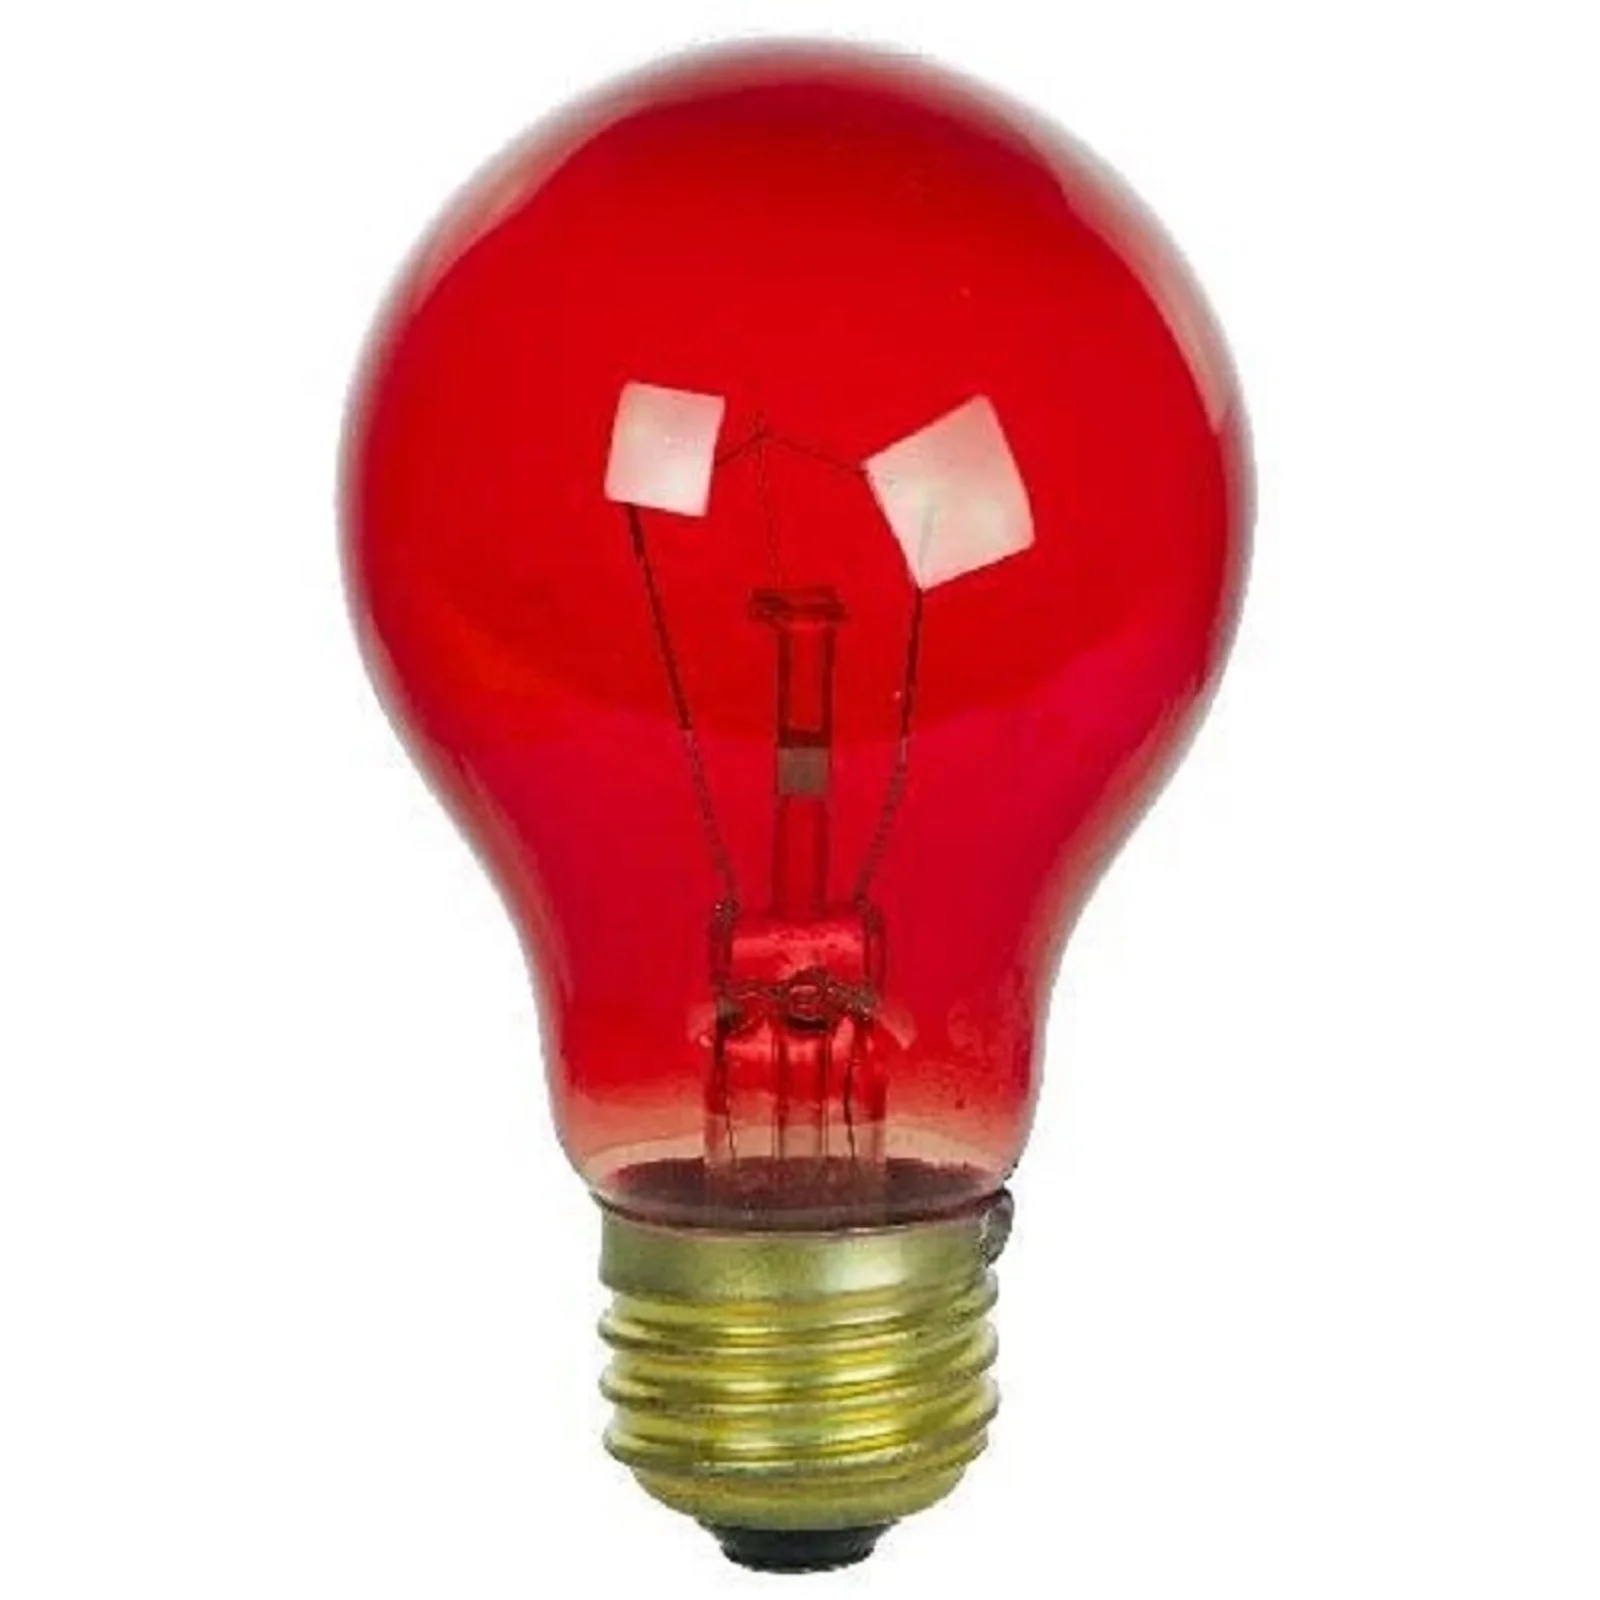 Лампочка 1 красный цвет. Лампа светодиодная красная е27. Лампа накаливания Филипс 5 ватт красная. Лампочки красного света 100 ватт. 120w лампочка накаливания.